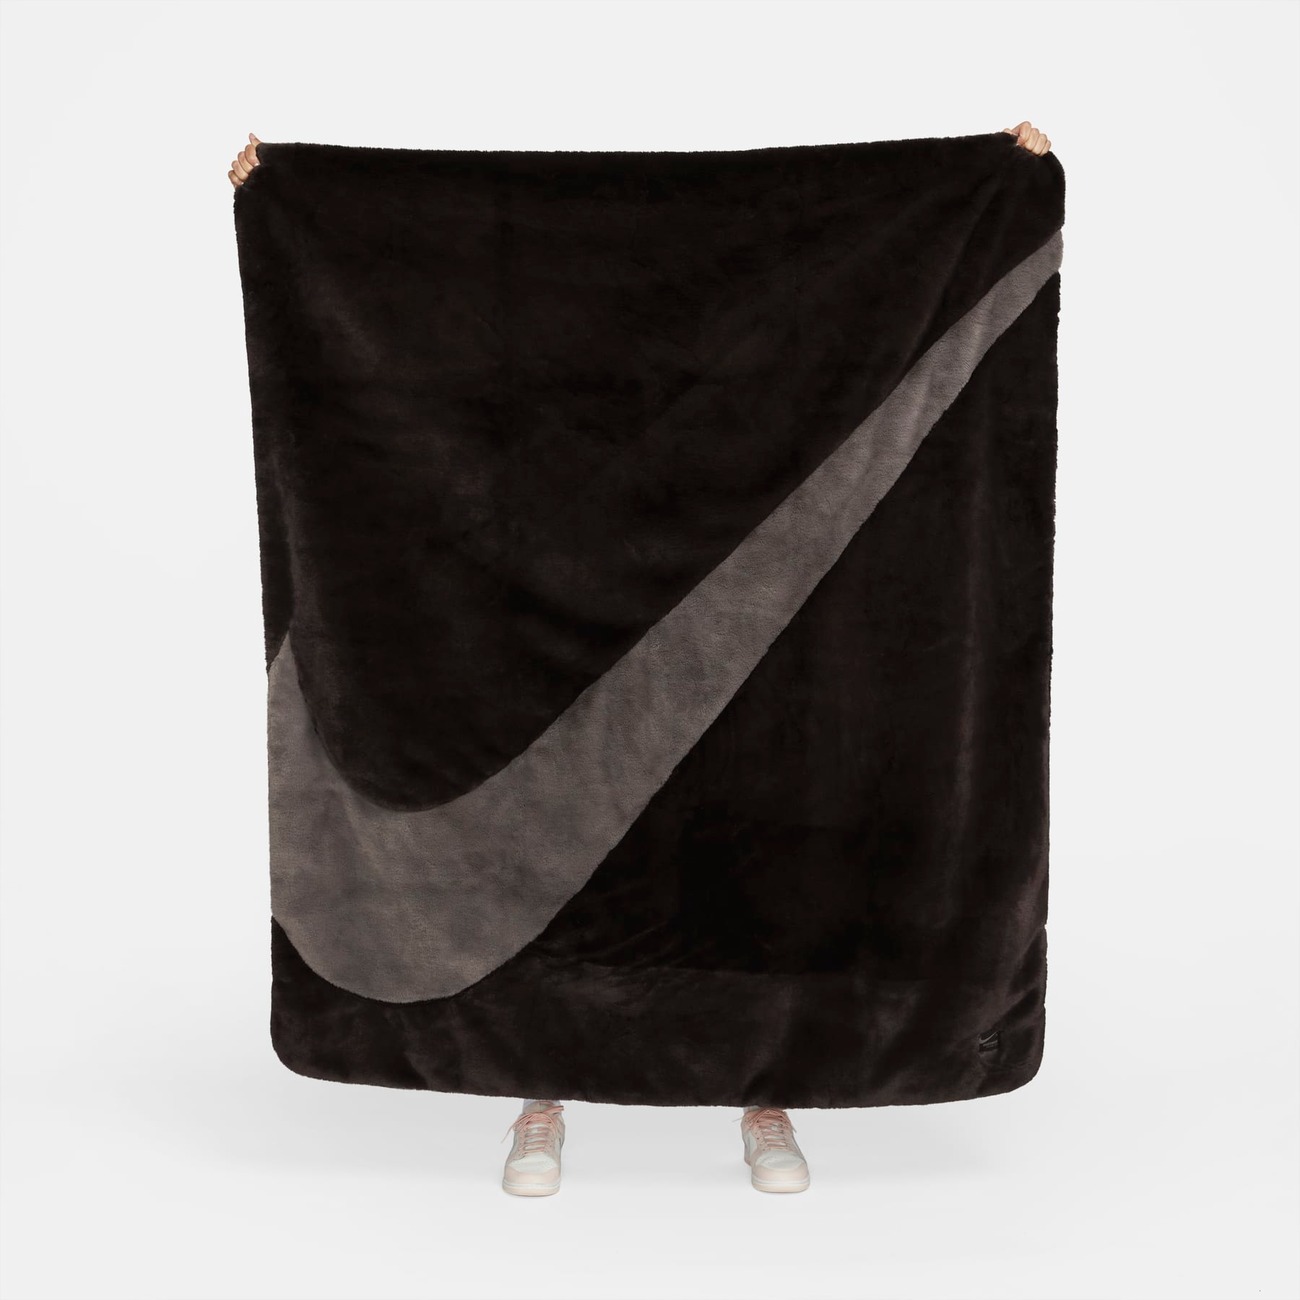 Cobertor Nike Sportswear Feminino - Foto 7